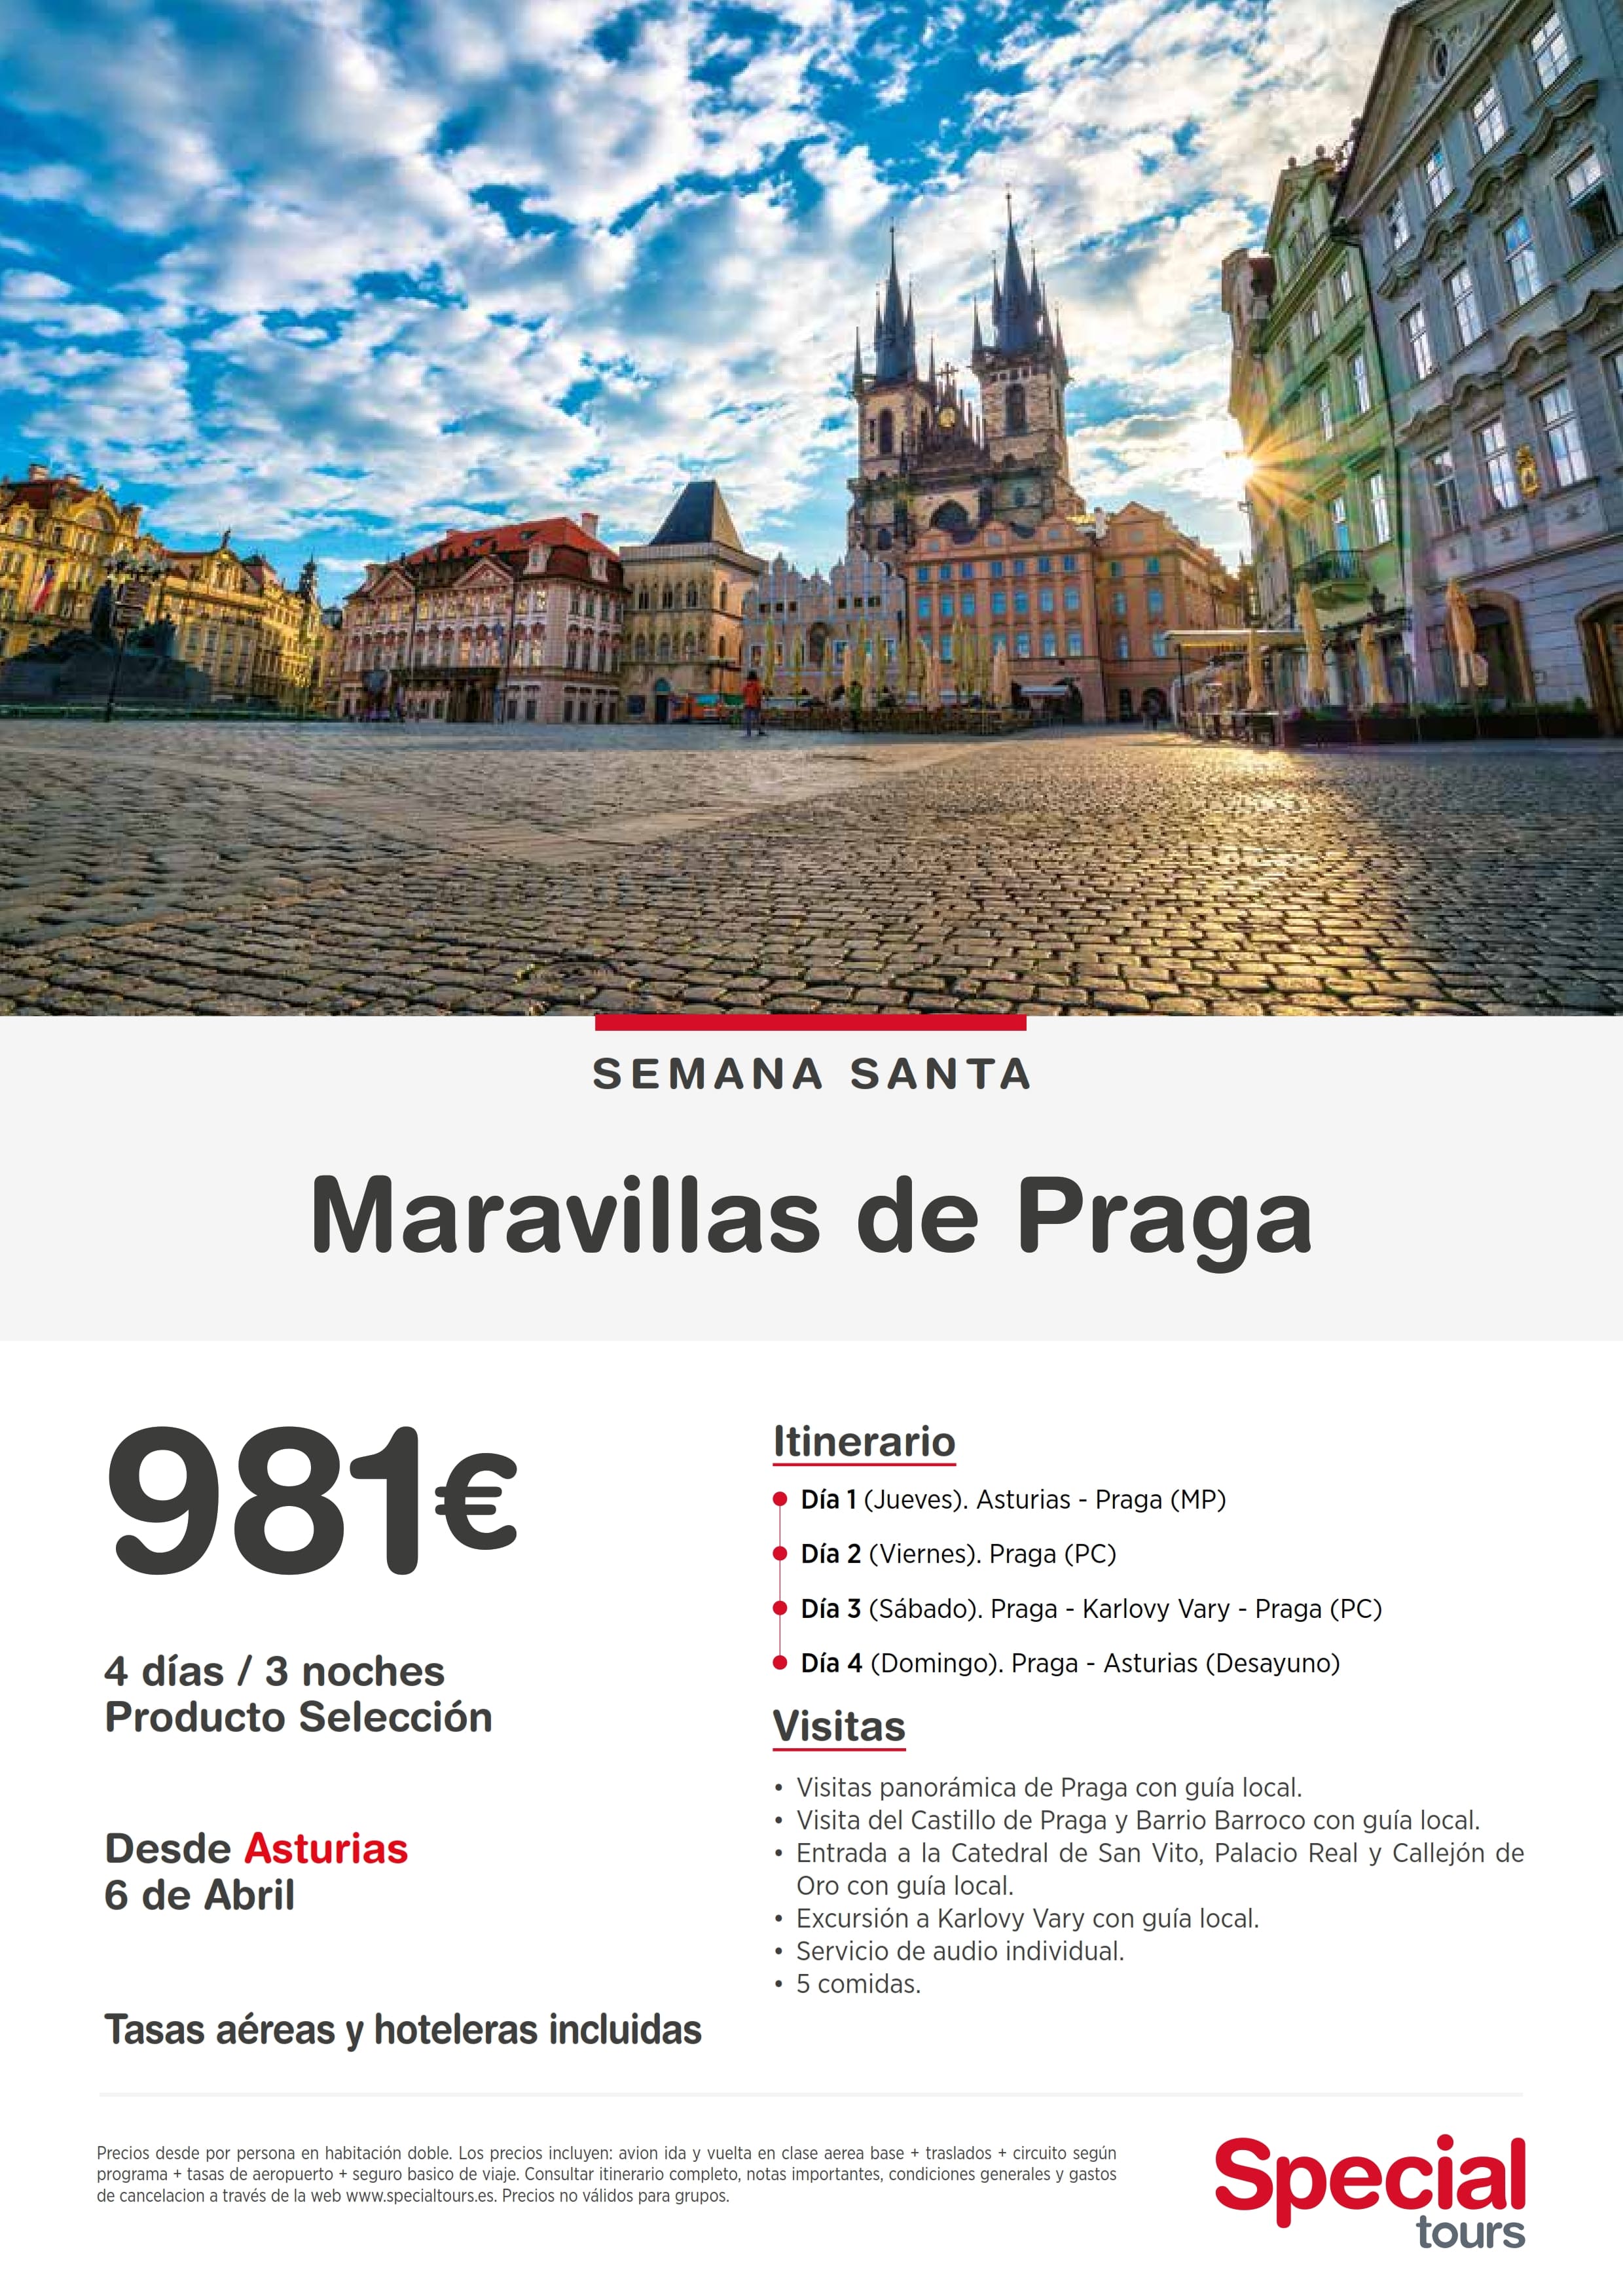 Ref 03 Maravillas de PRAGA desde Asturias